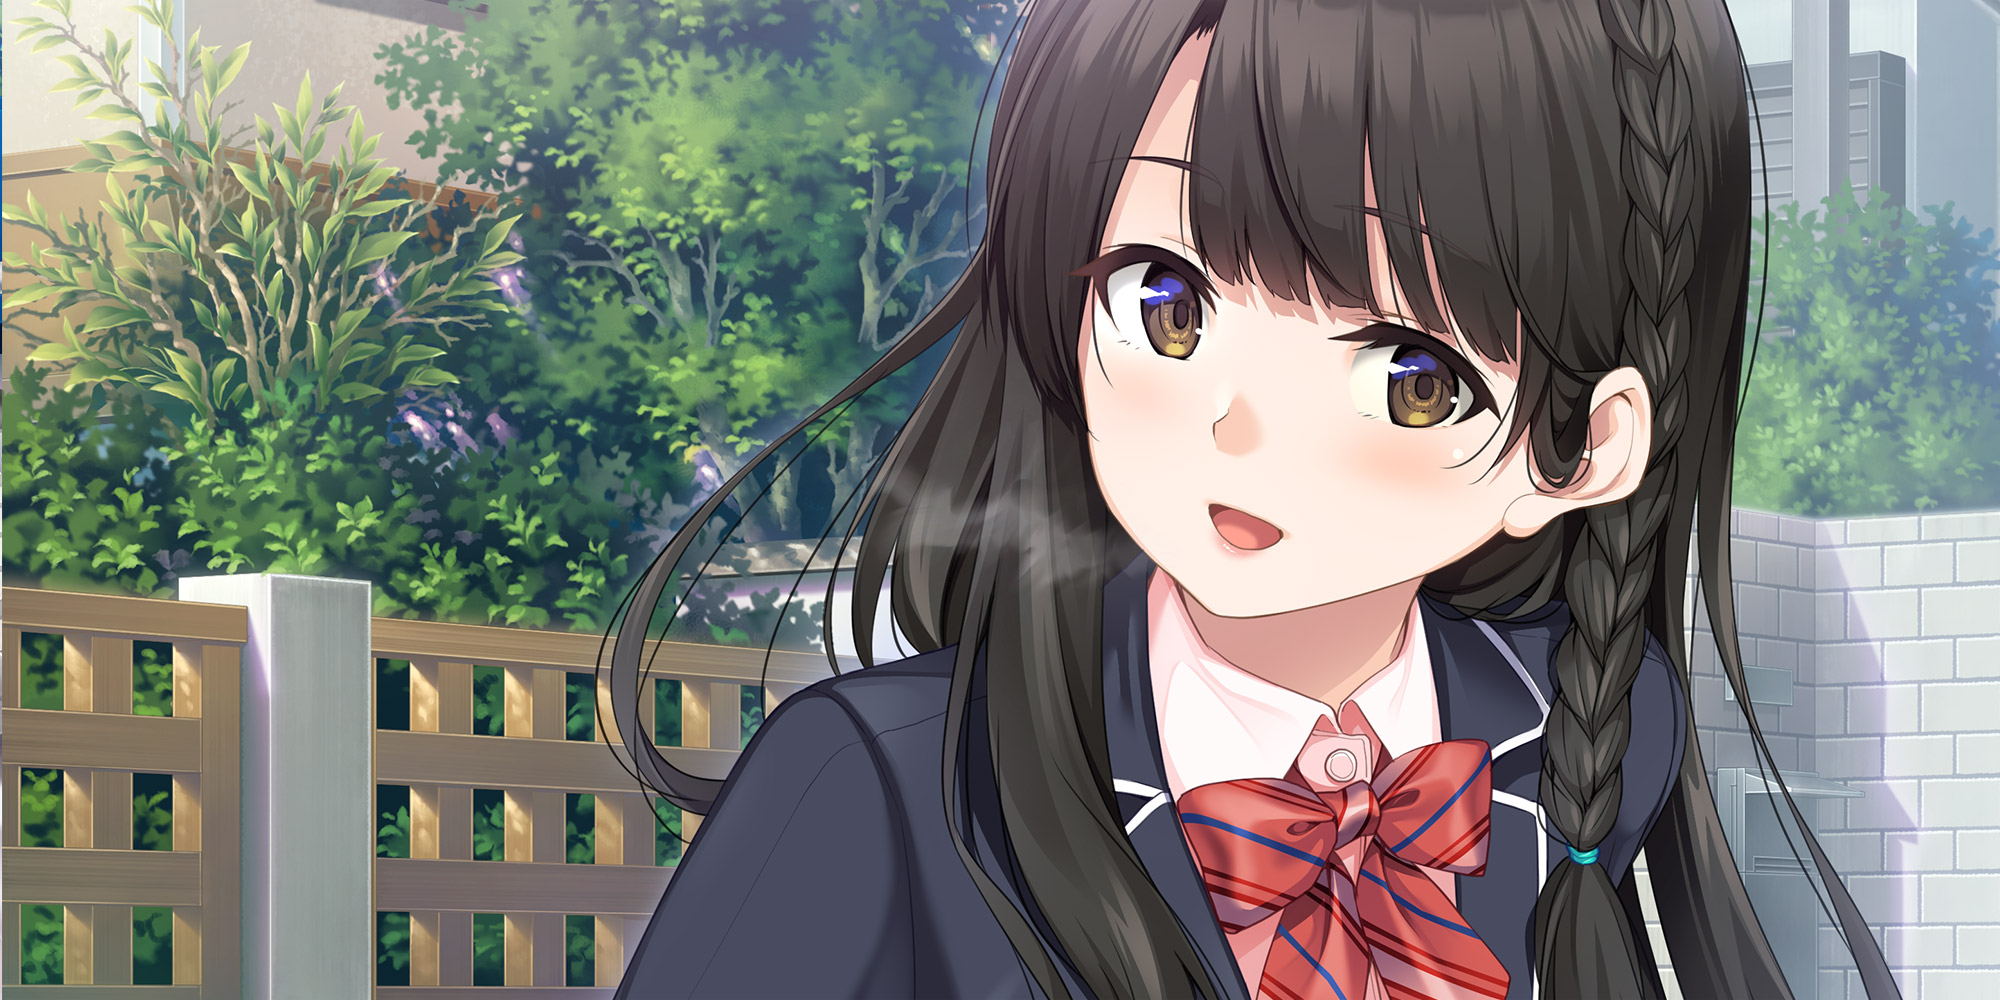 Unasaka Anime Anime Girls Bangs Smiling Dark Hair Brown Eyes School Uniform 2000x1000